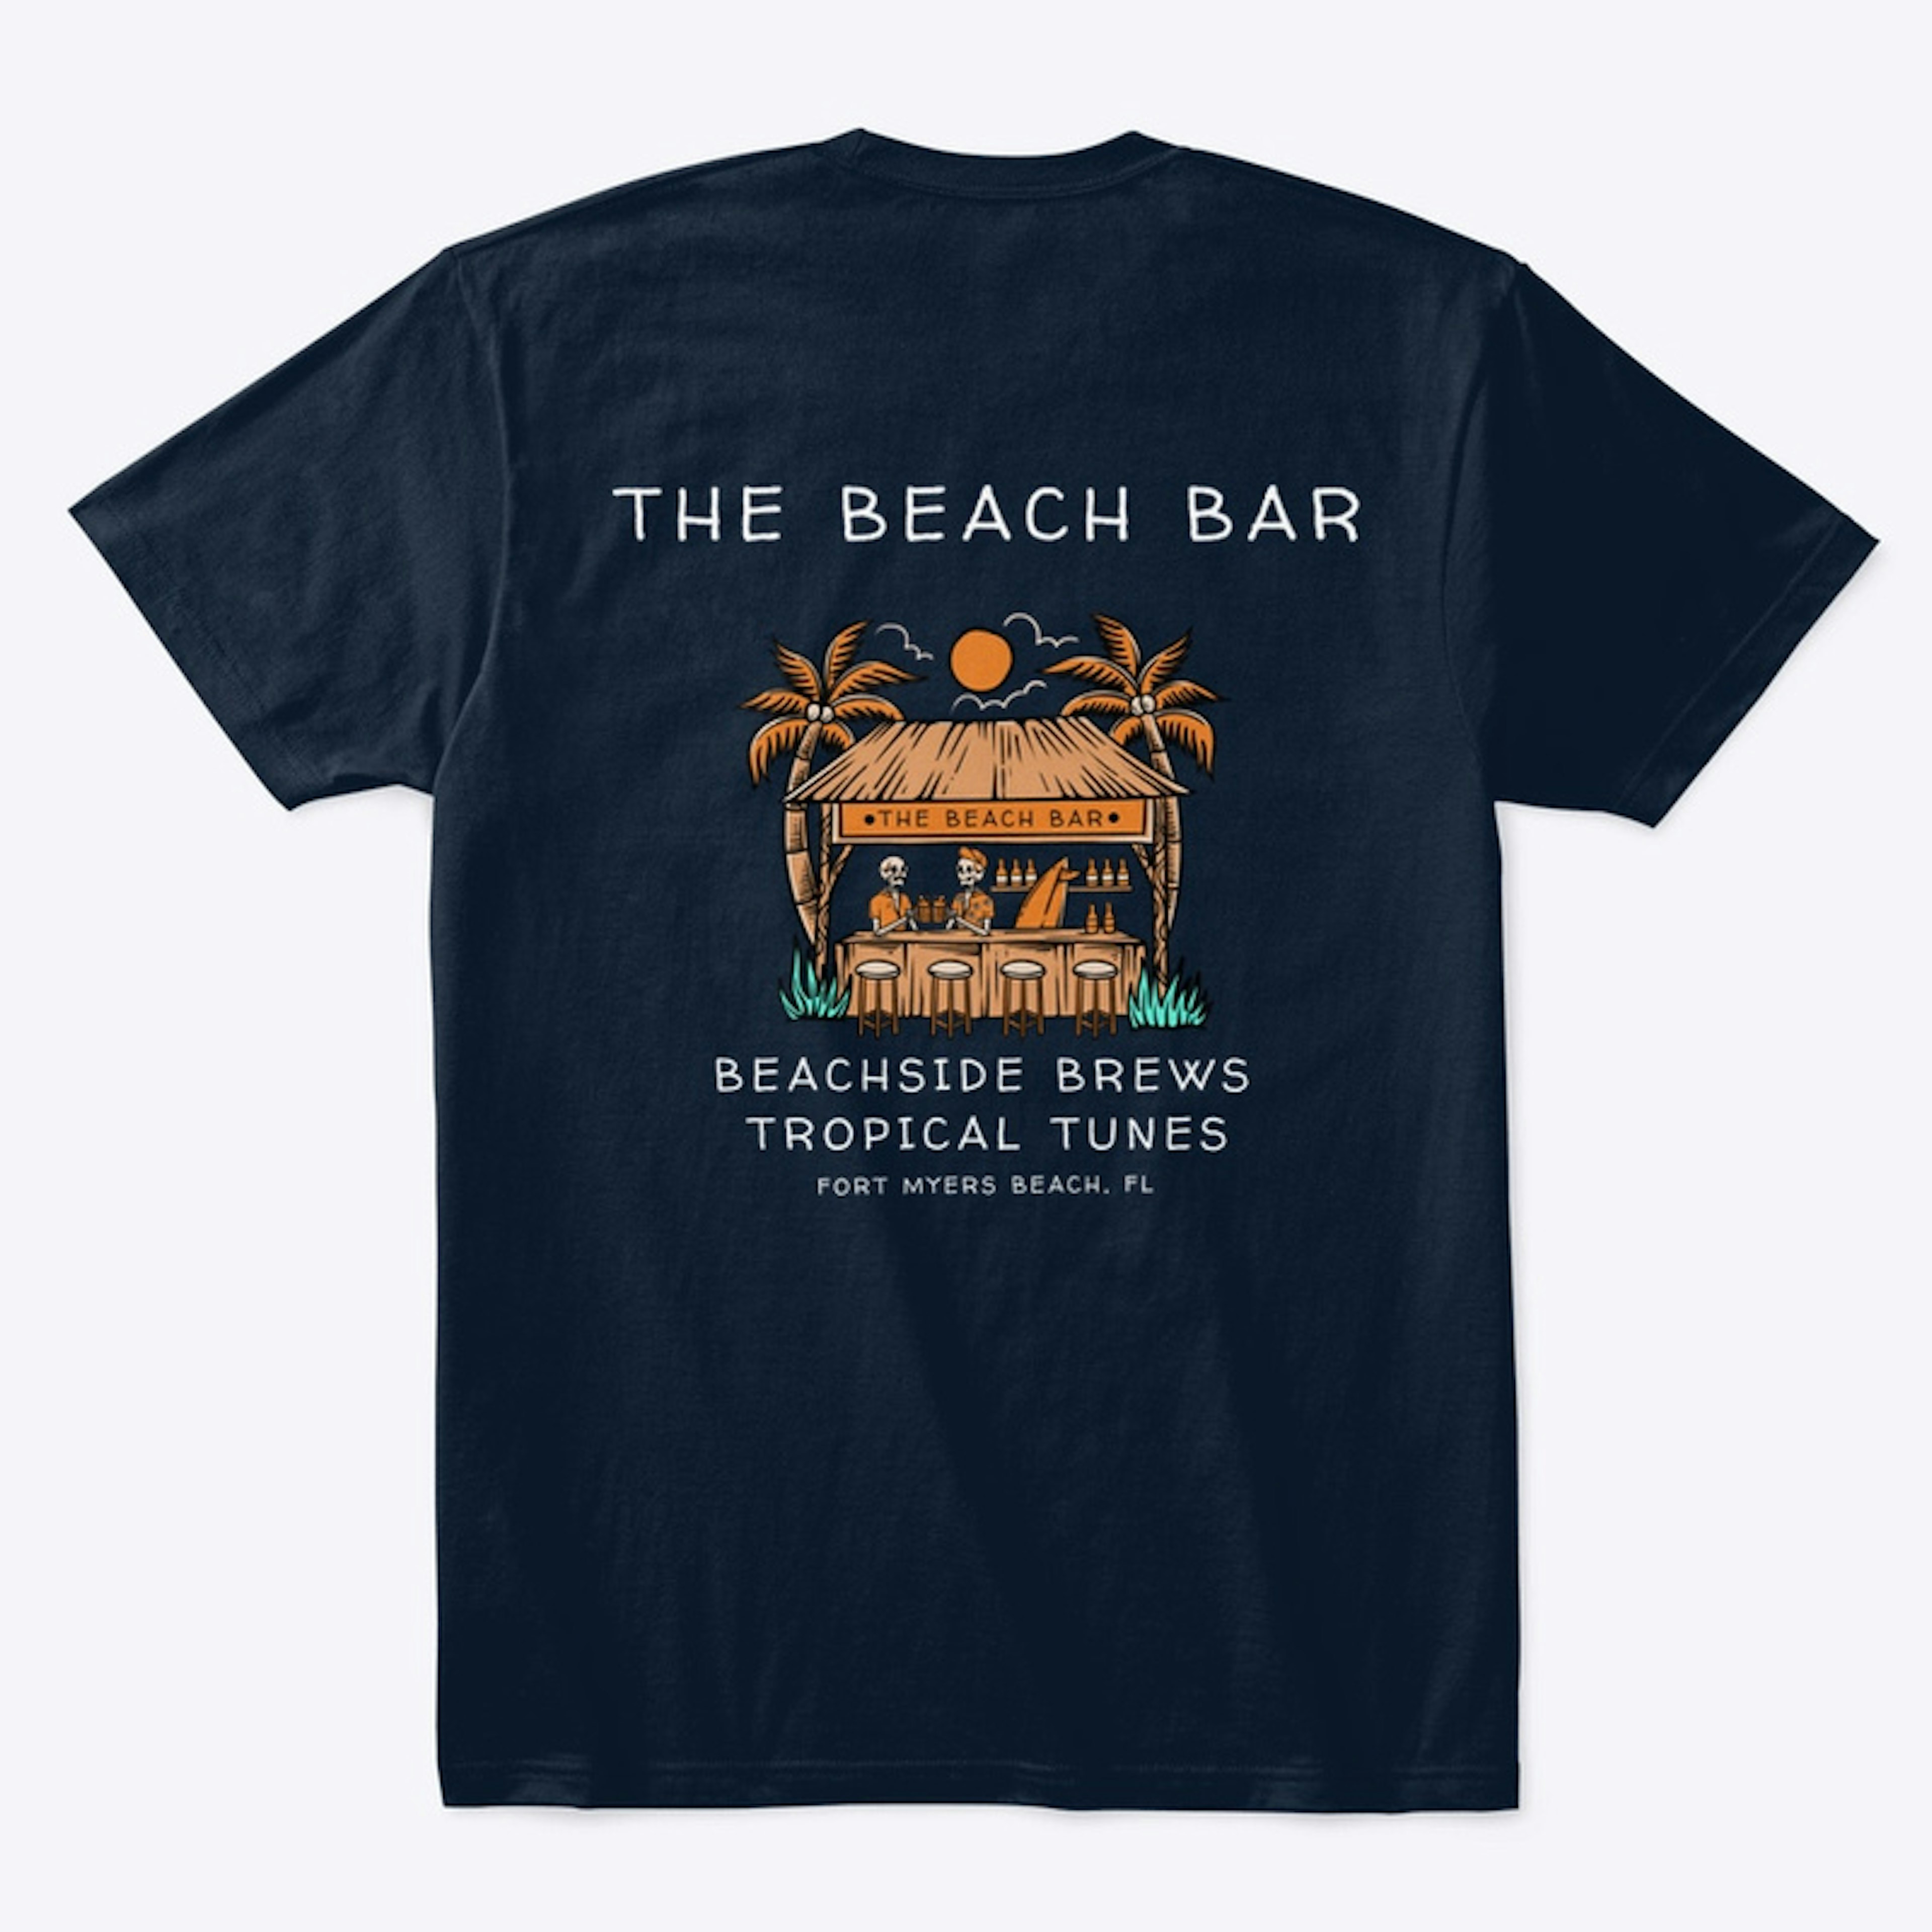 Beachside Brews & Tropical Tunes